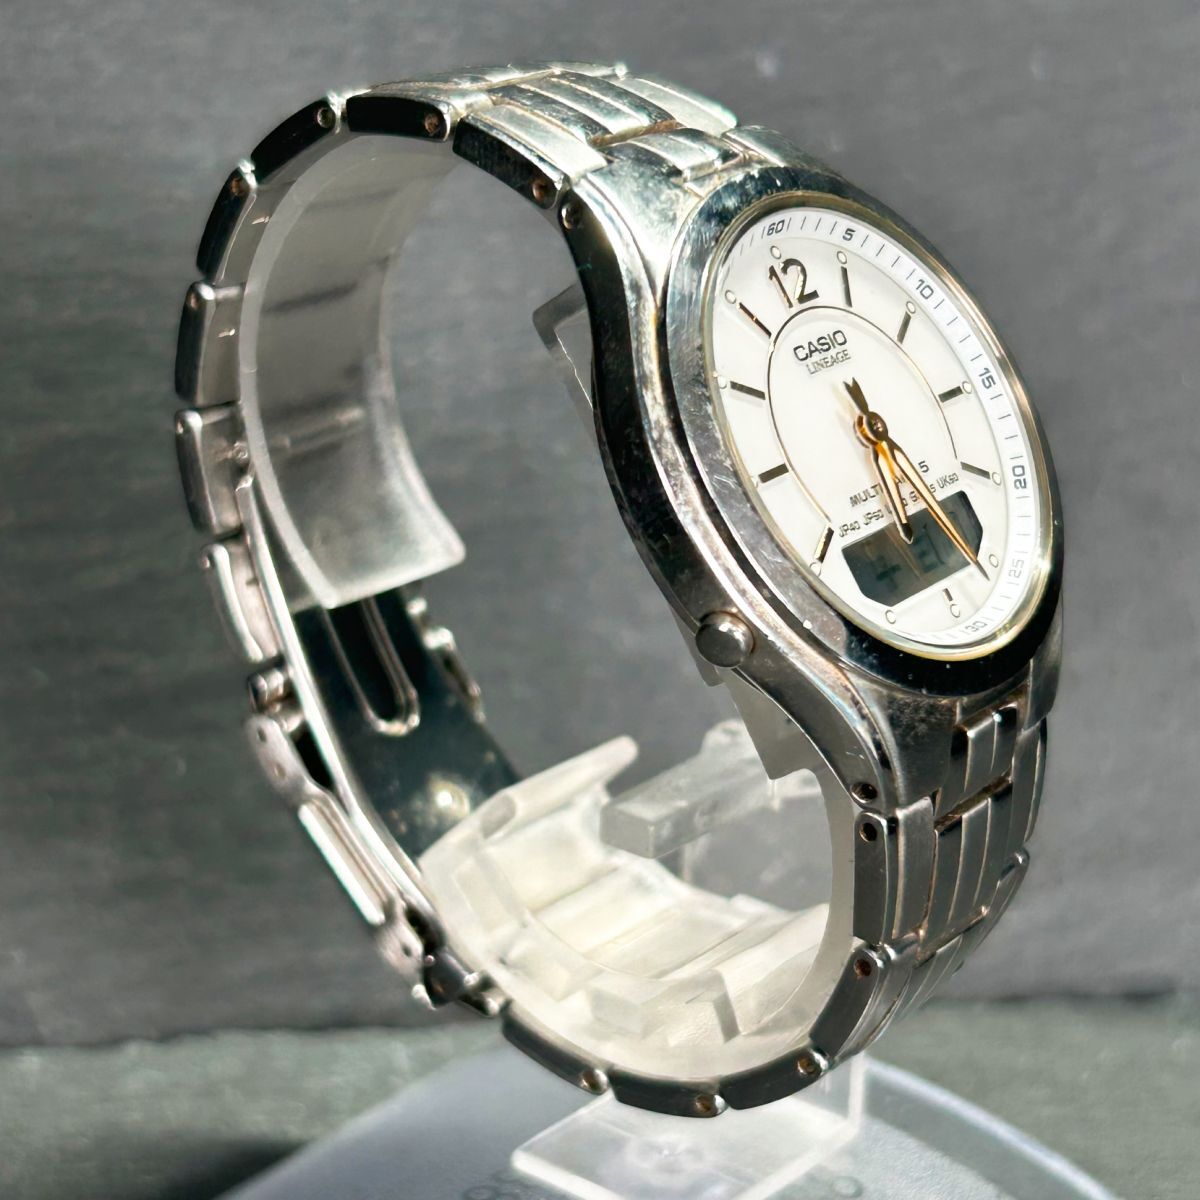 CASIO カシオ LINEAGE リニエージ LCW-M200DJ-7 腕時計 タフソーラー 電波時計 アナデジ ホワイト ゴールド ステンレススチール メンズの画像5